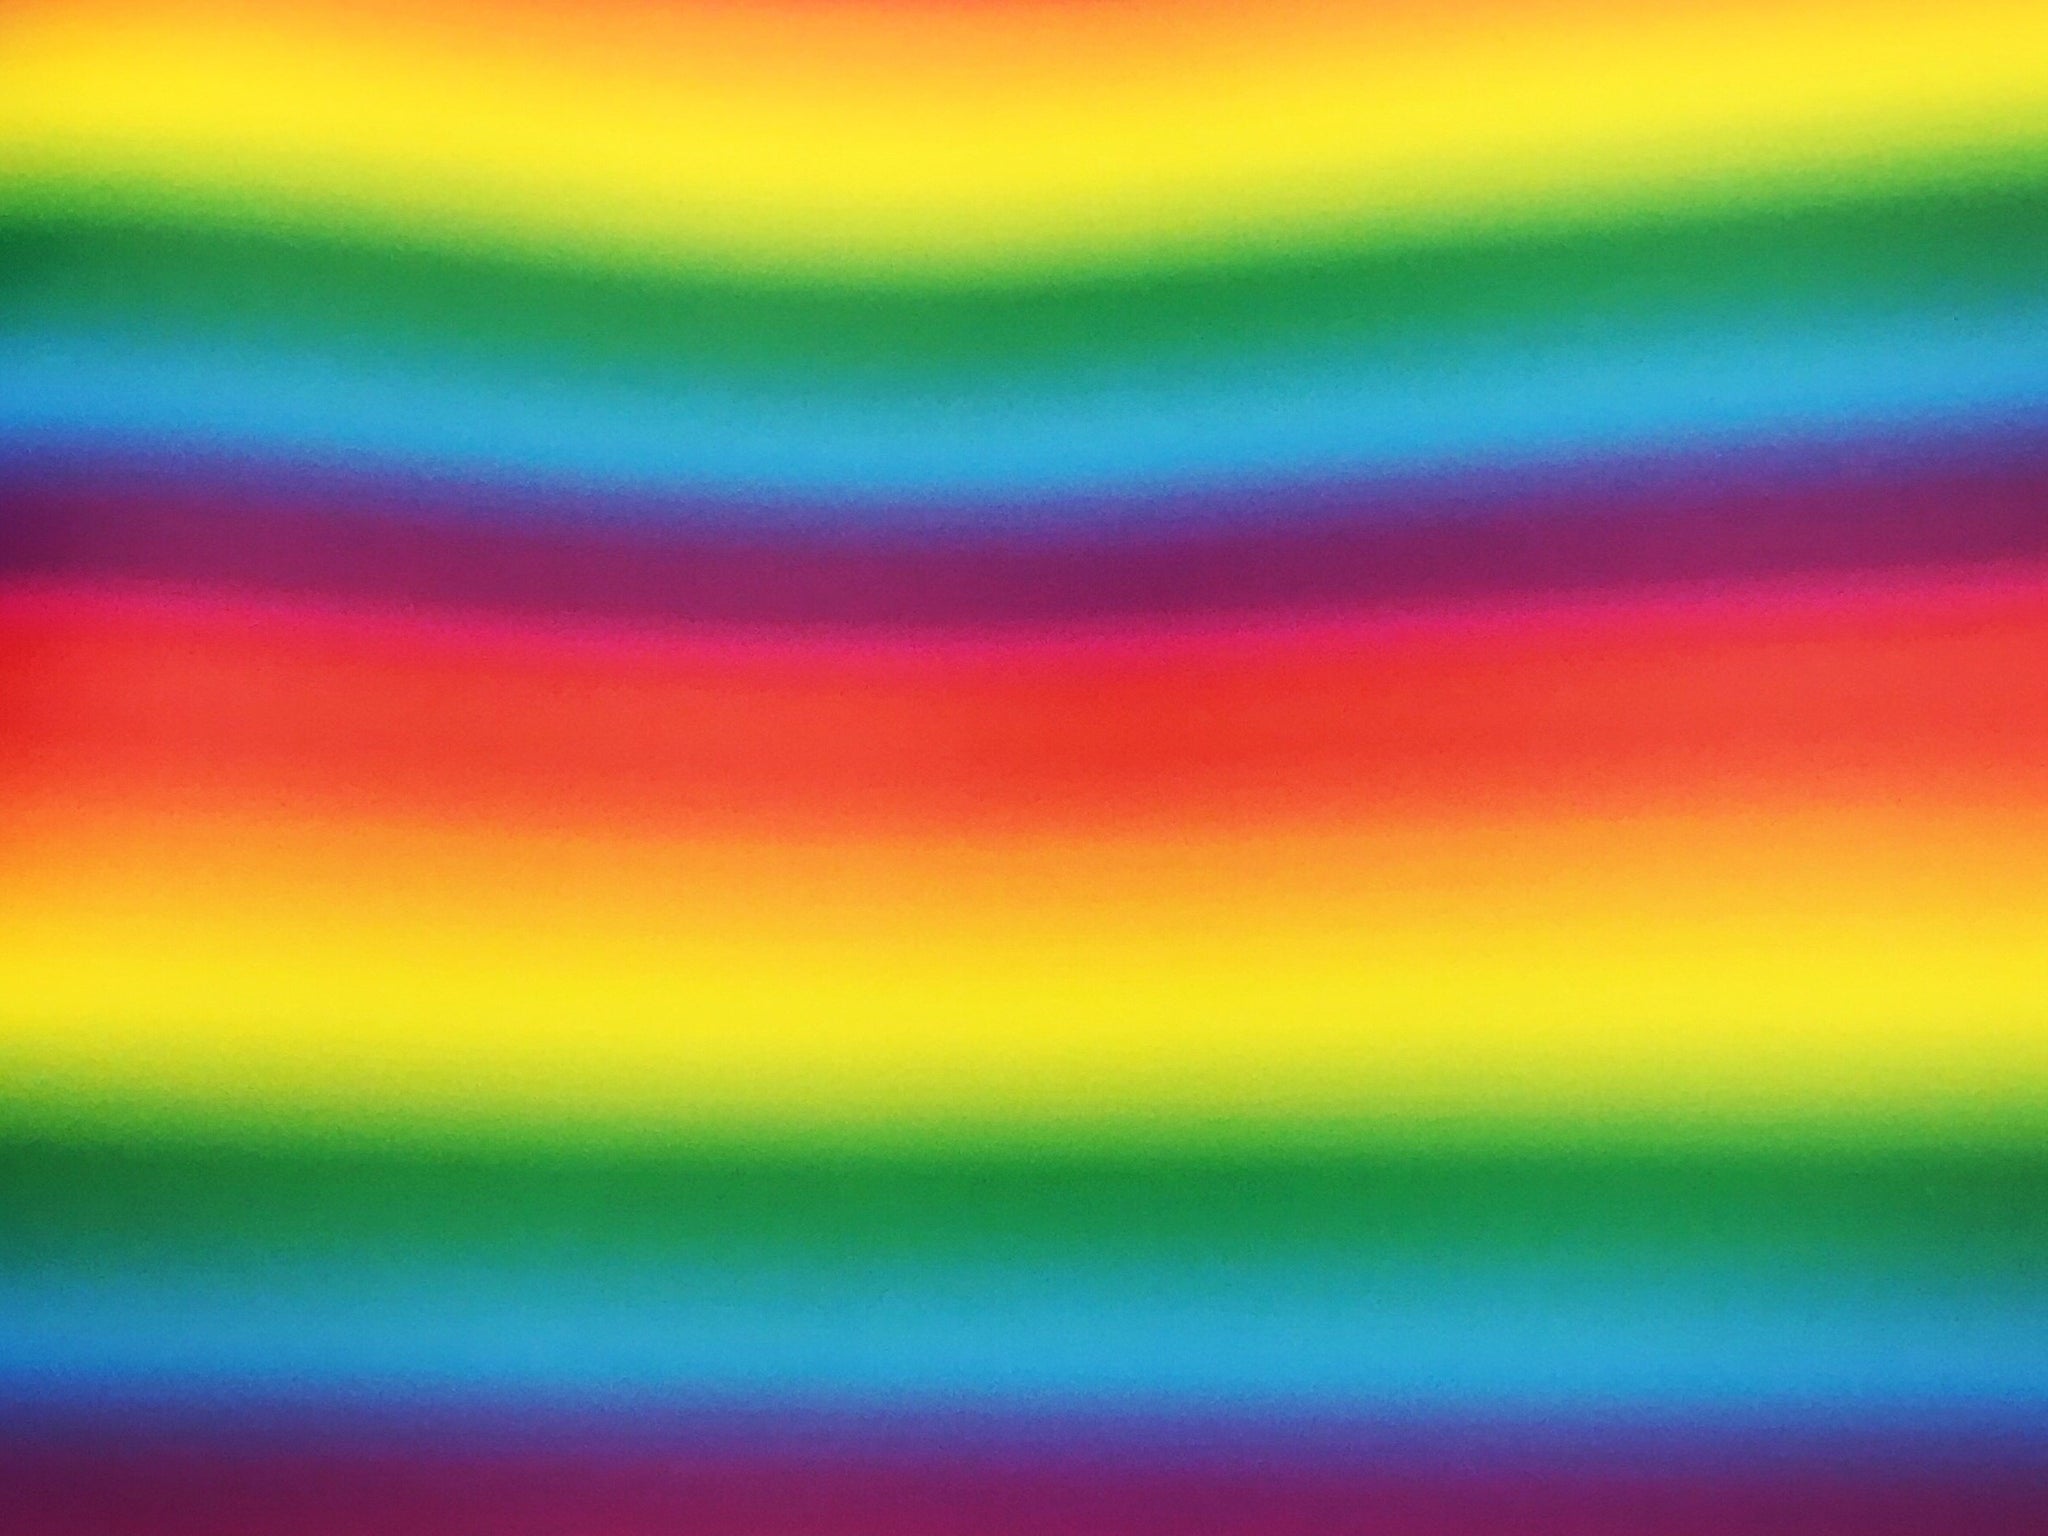 Prizm Fade Rainbow 20”x36” Roll